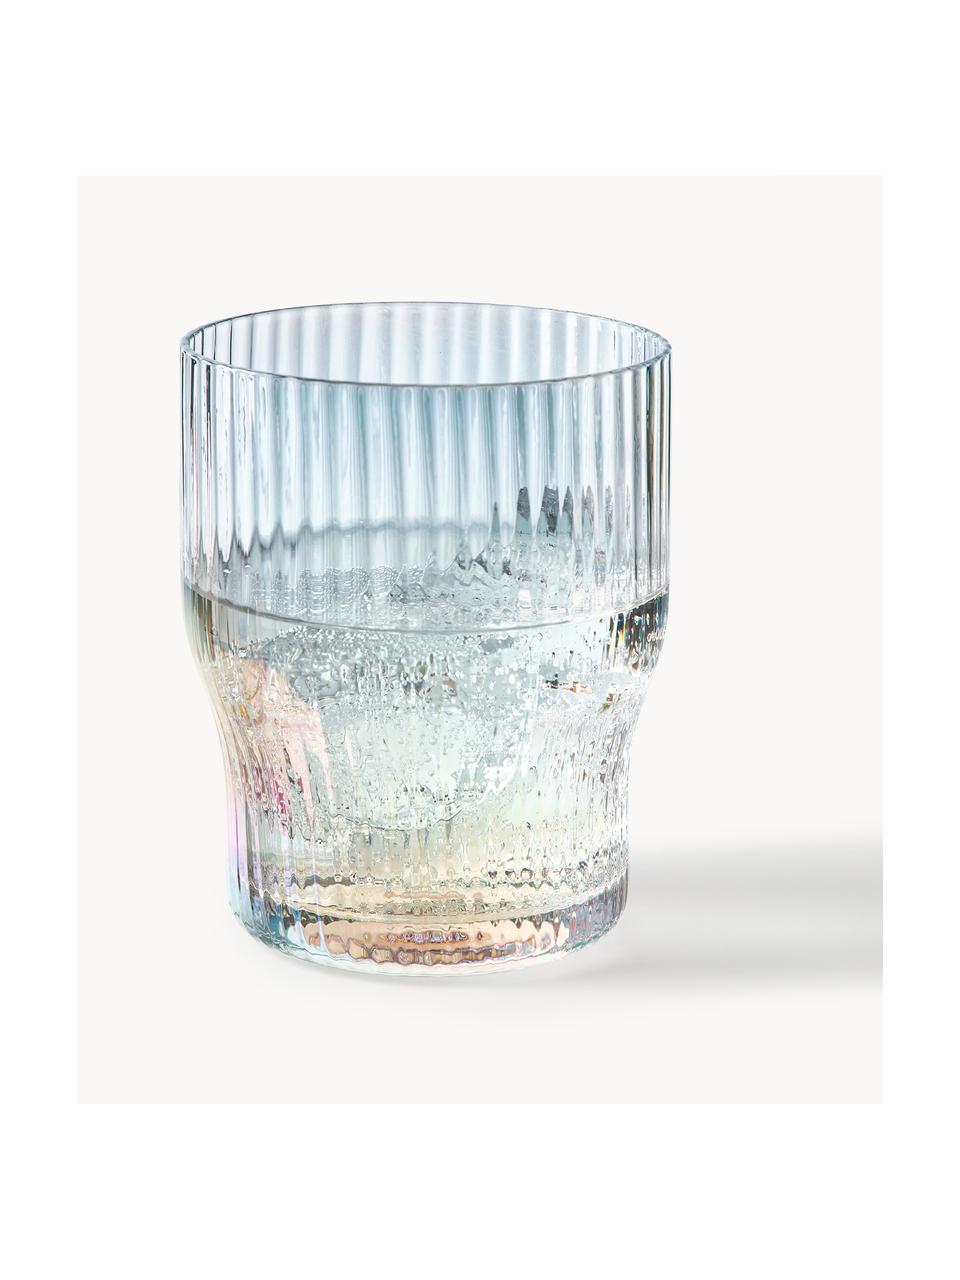 Bicchieri in vetro soffiato iridescente Juno 4 pz, Vetro, Trasparente, Ø 9 x Alt. 11 cm, 400 ml